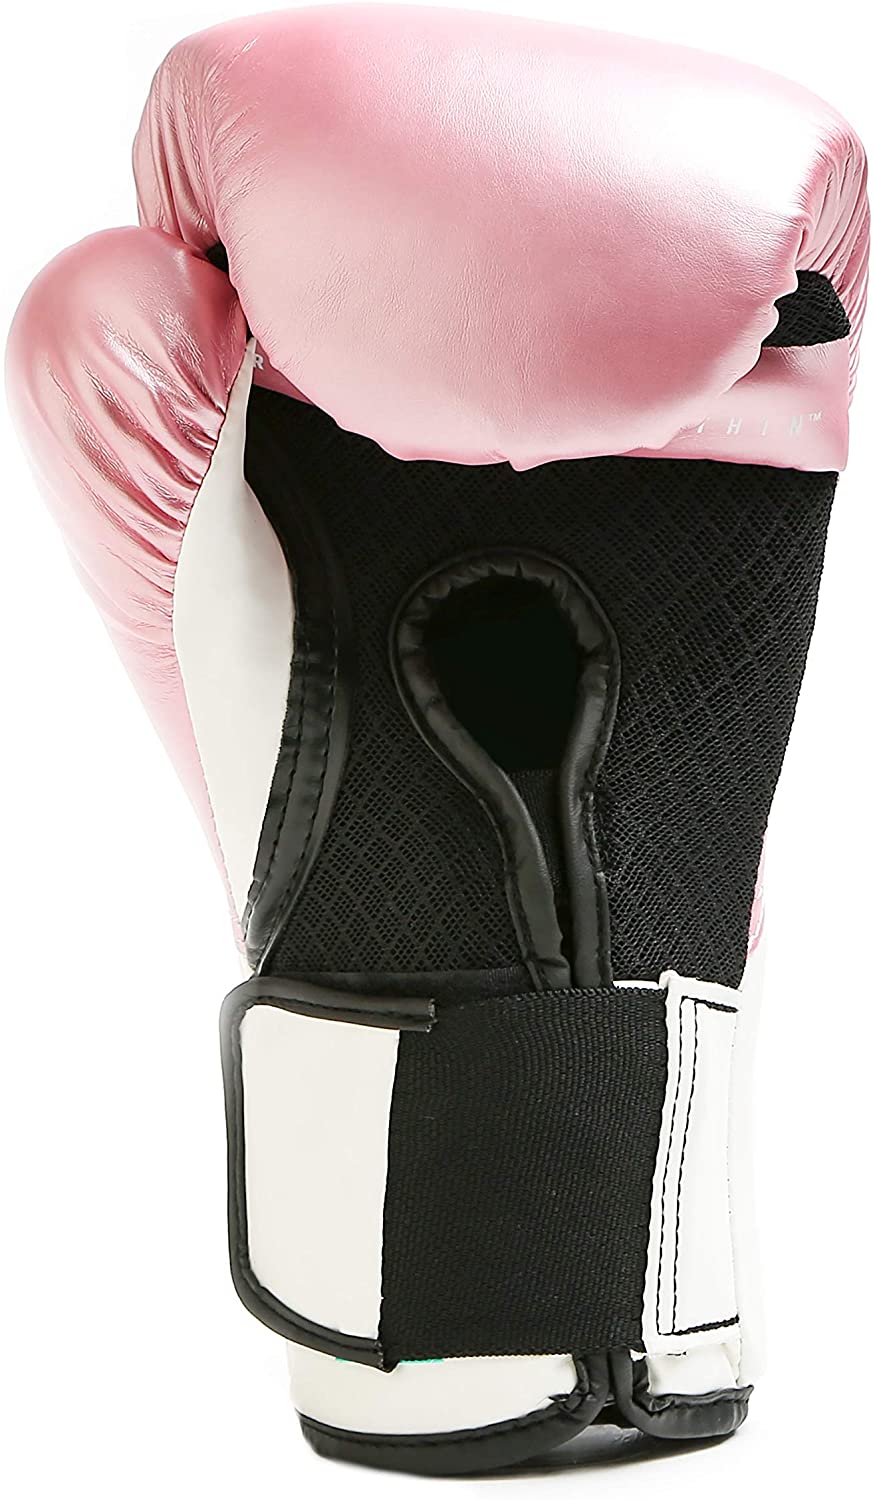 Everlast Elite Pro Style Elite Boxhandschuhe - Pink/Weiß